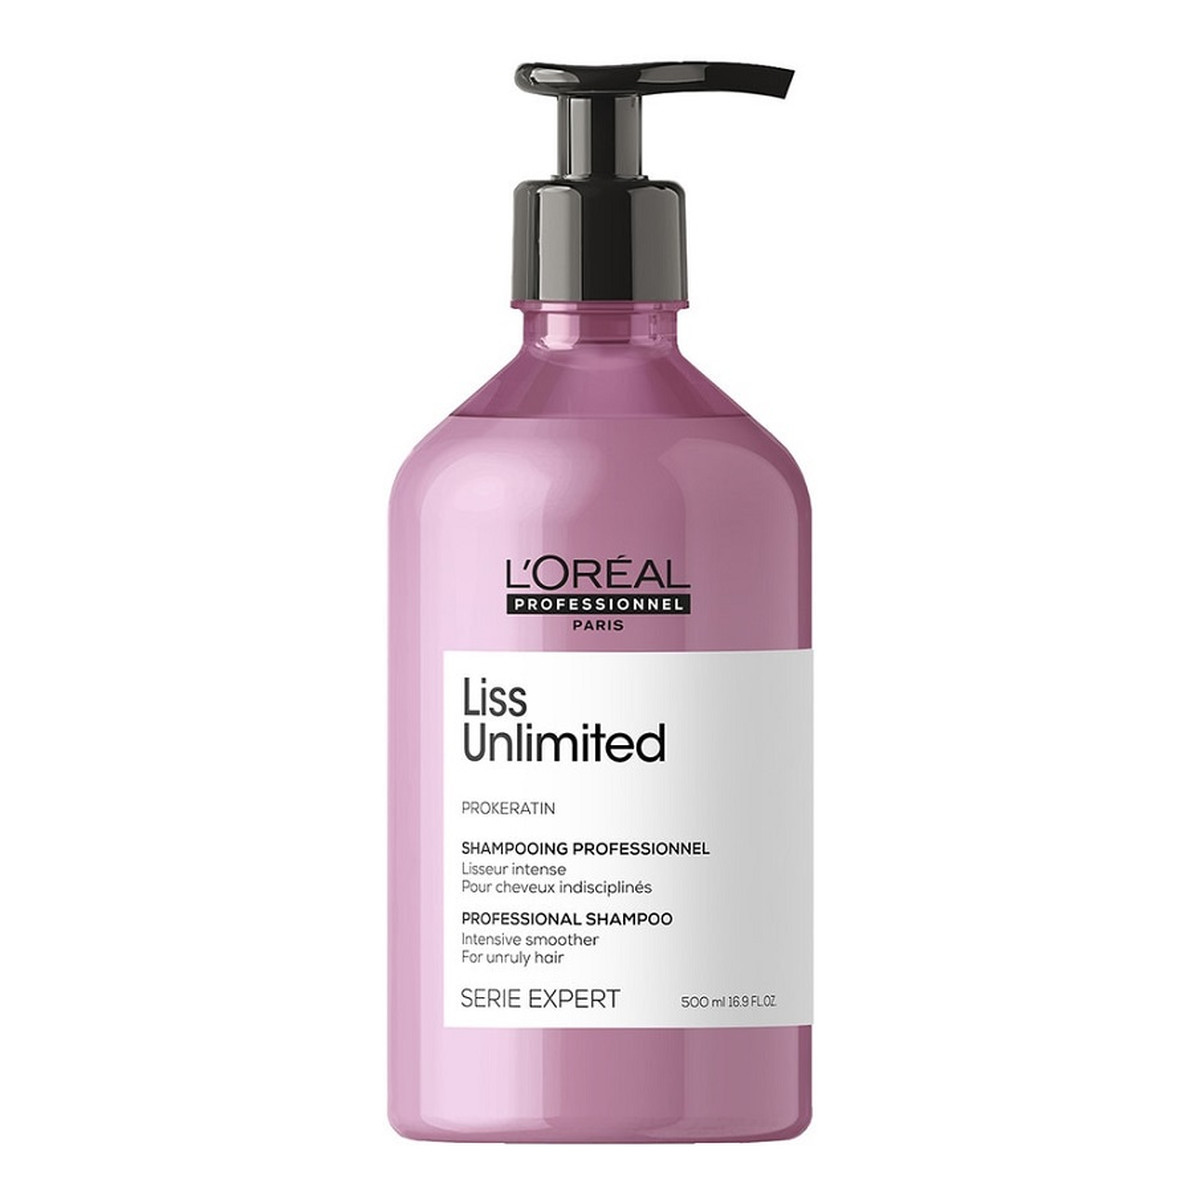 L'Oreal Paris Serie expert liss unlimited shampoo szampon intensywnie wygładzający włosy niezdyscyplinowane 500ml